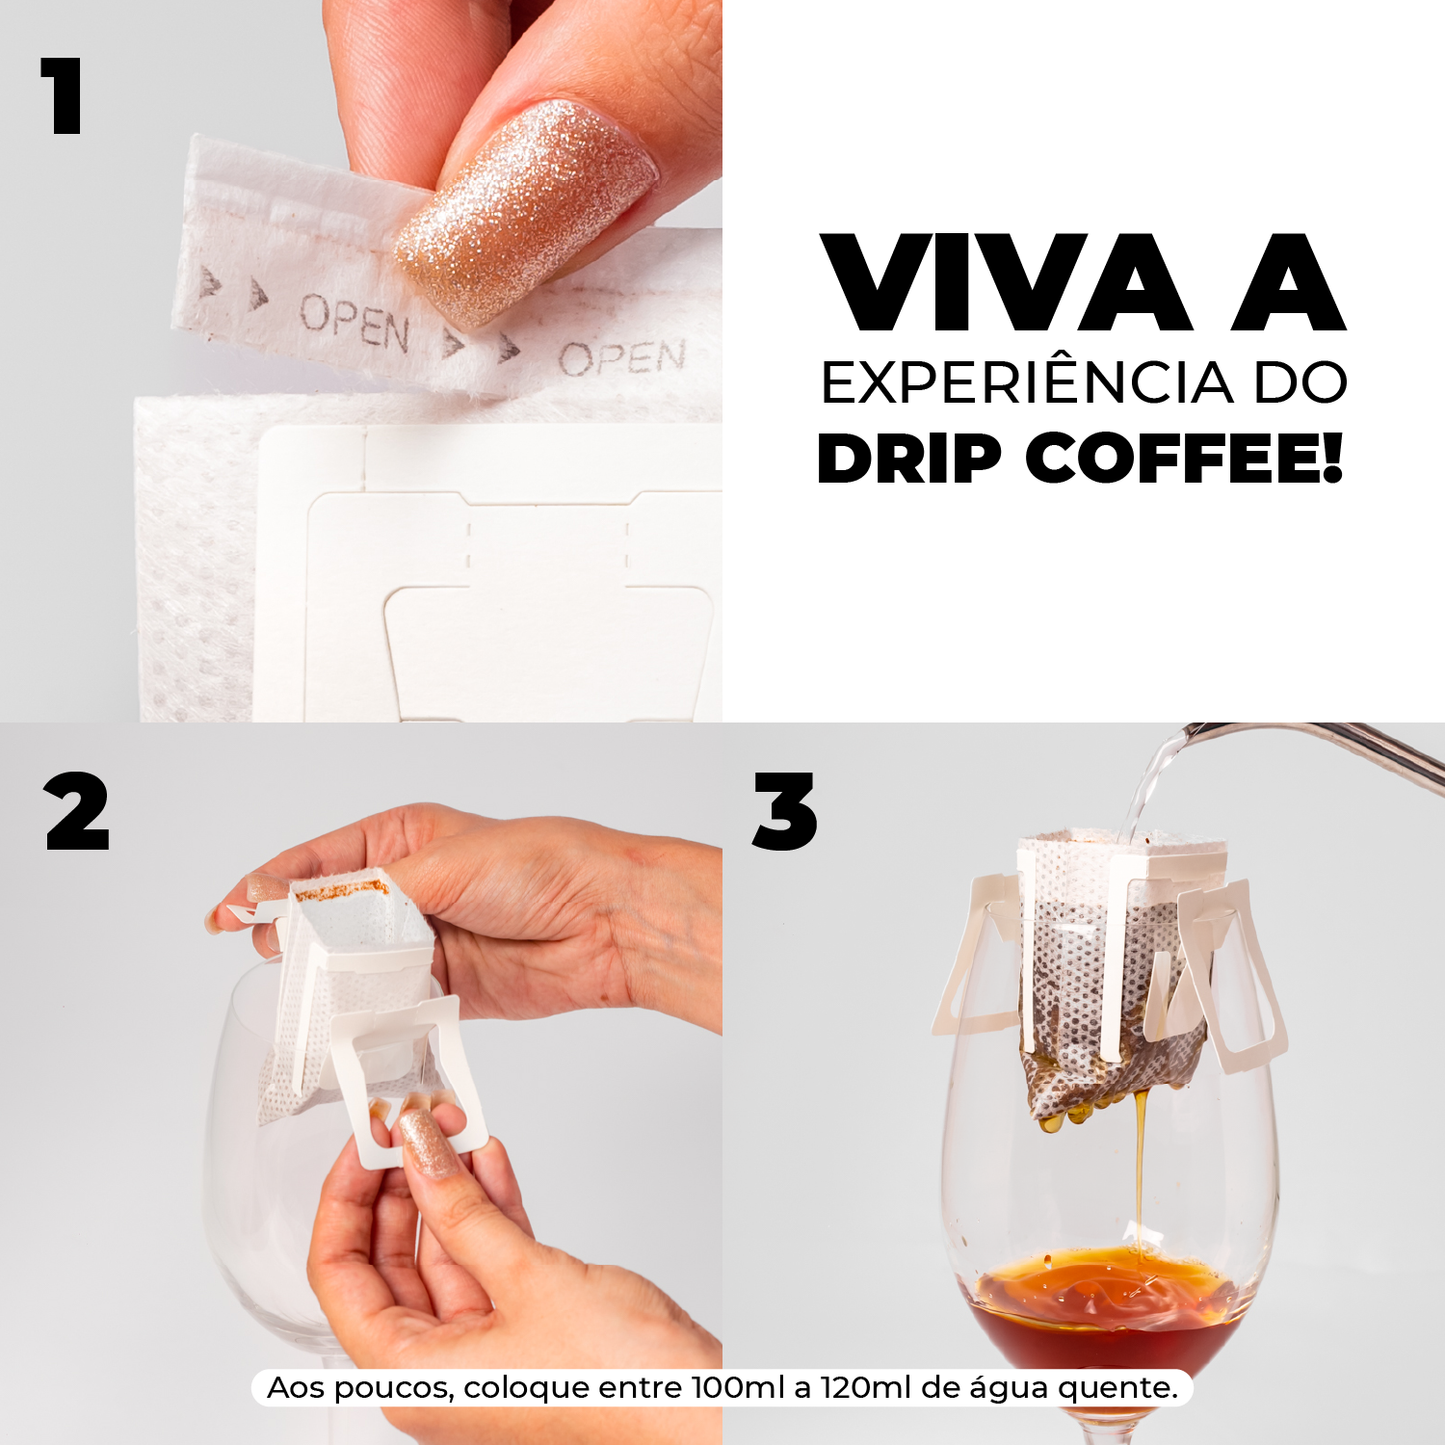 Assinatura Café Sul De Minas | Drip Coffee - 10 Sachês